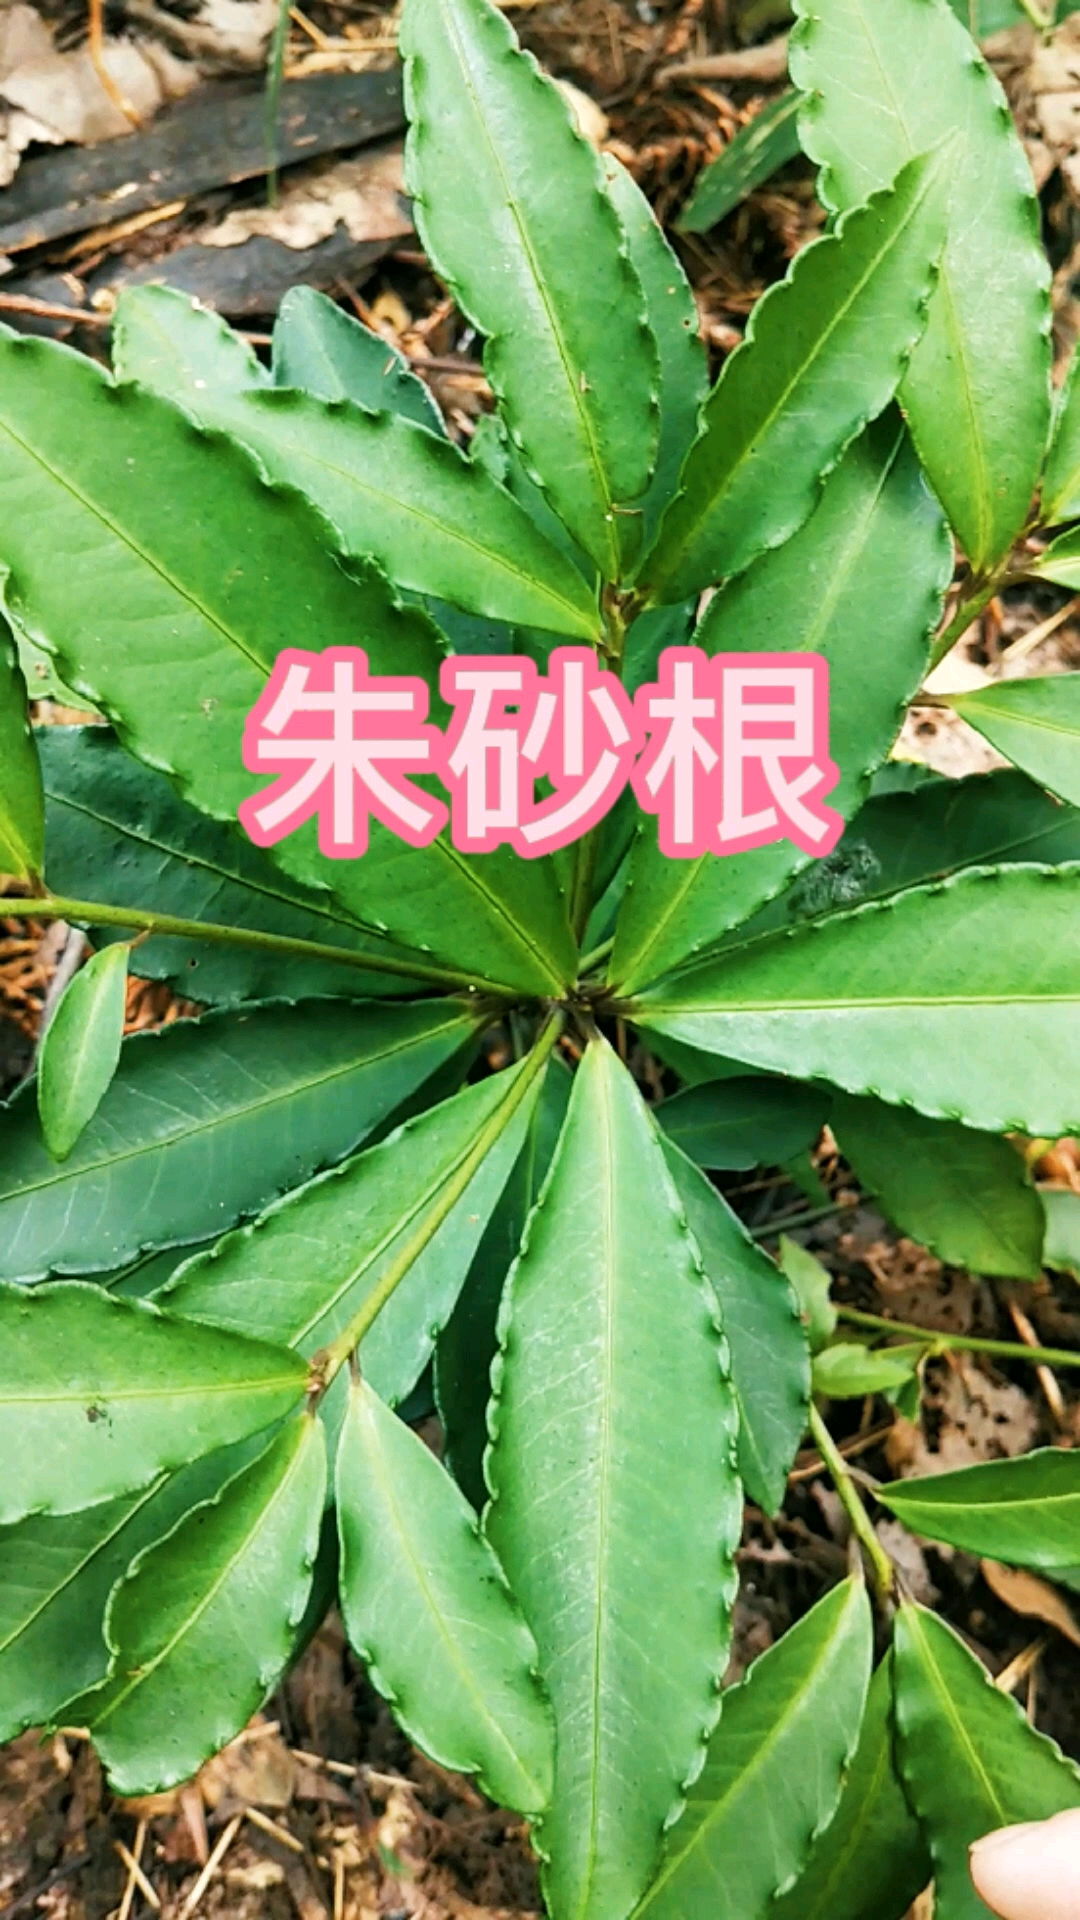 认识中草药植物朱砂根是种常用中药但很多人拿它做盆栽别称大罗伞八角